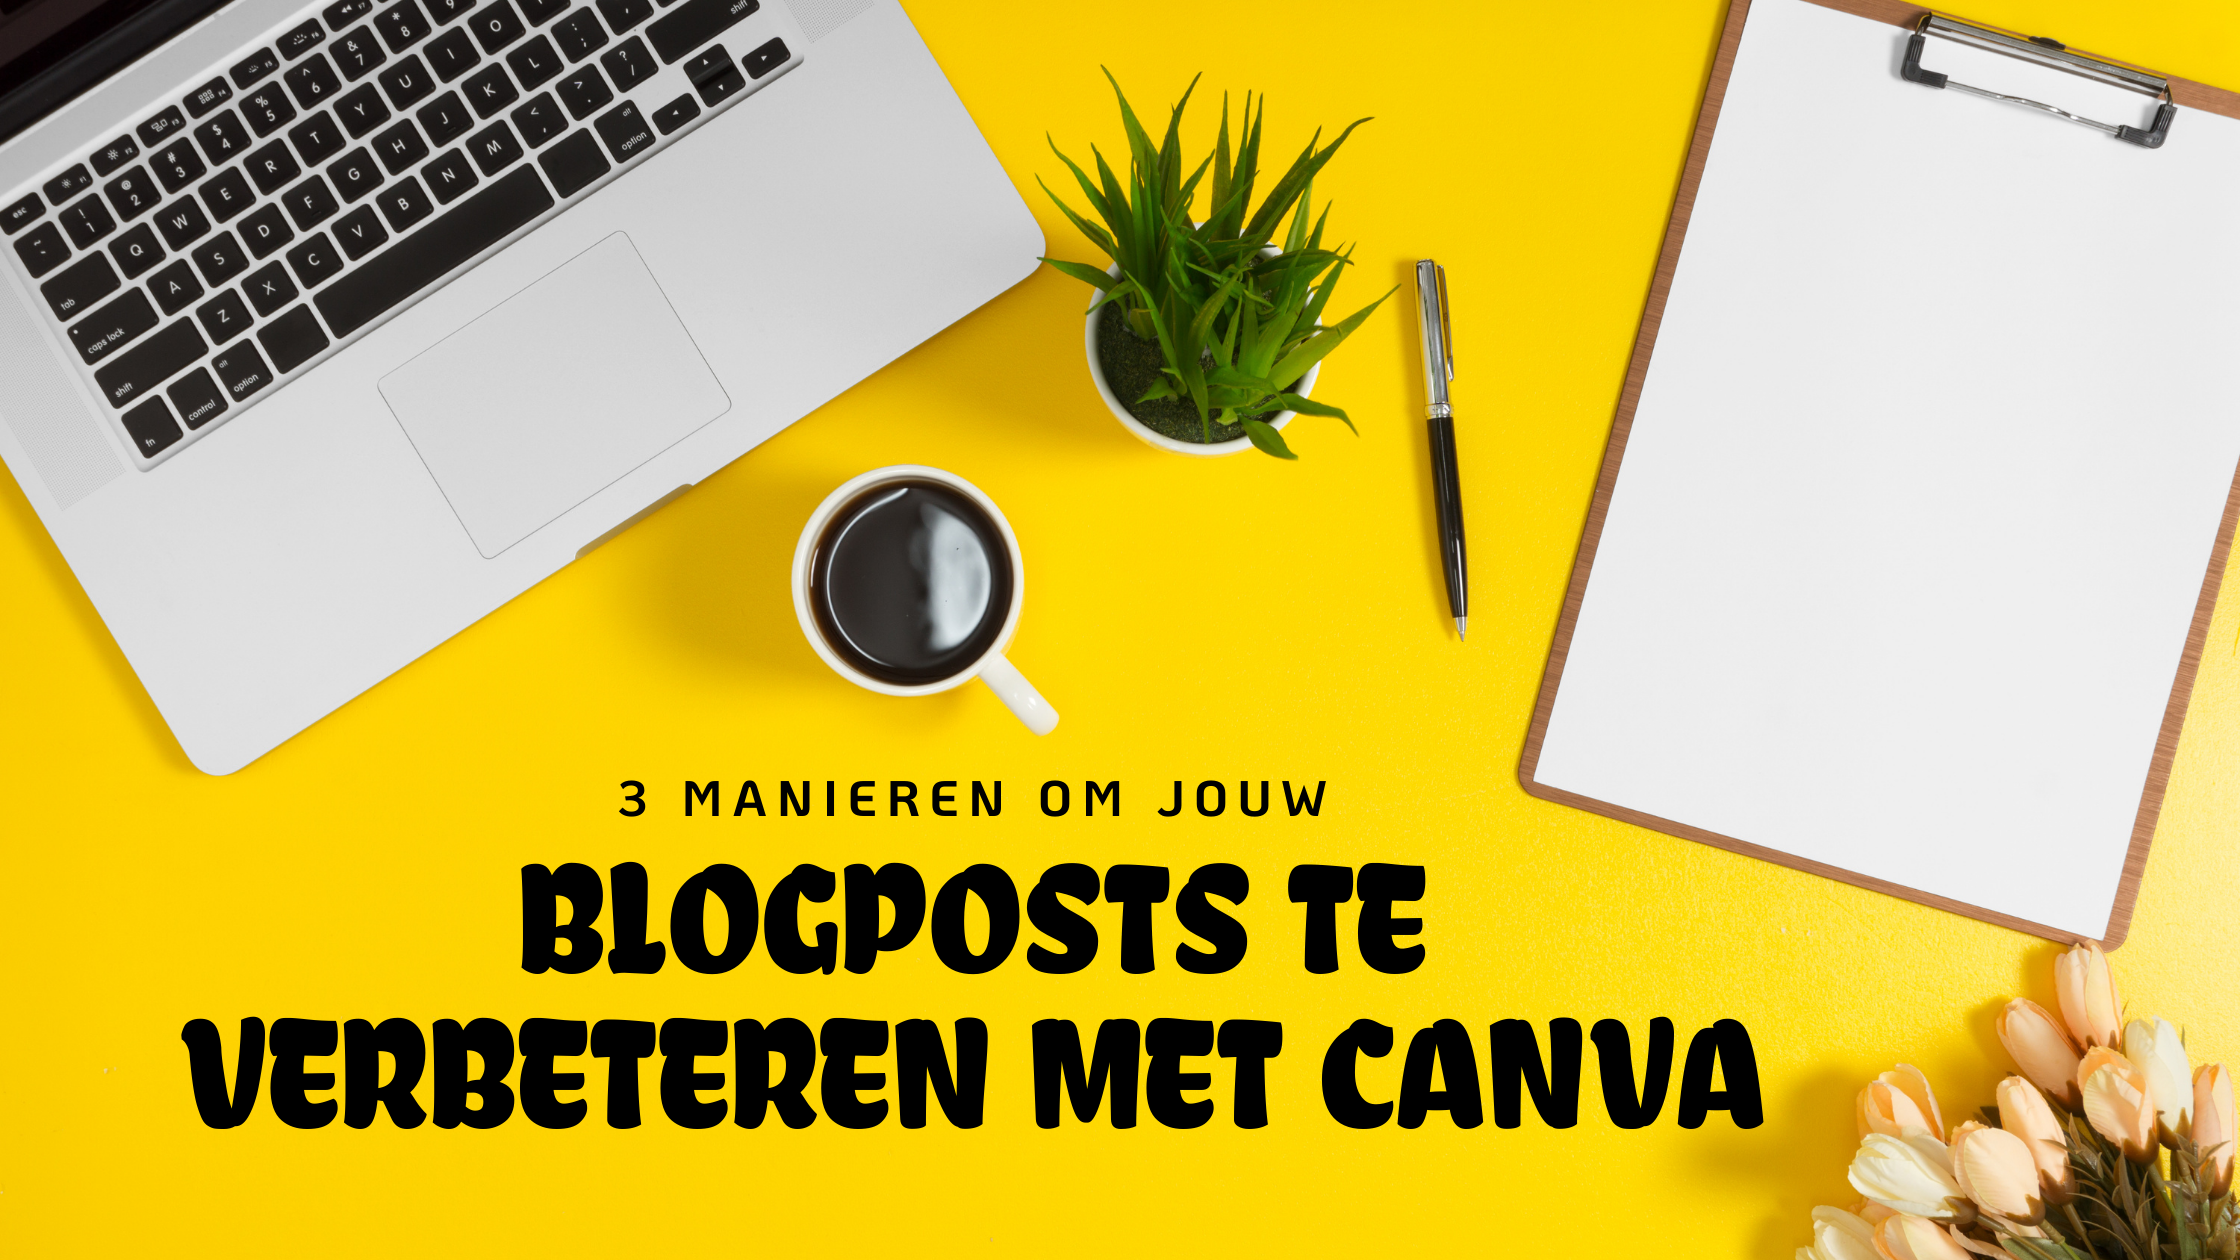 3 manieren om blogposts te verbeteren met Canva